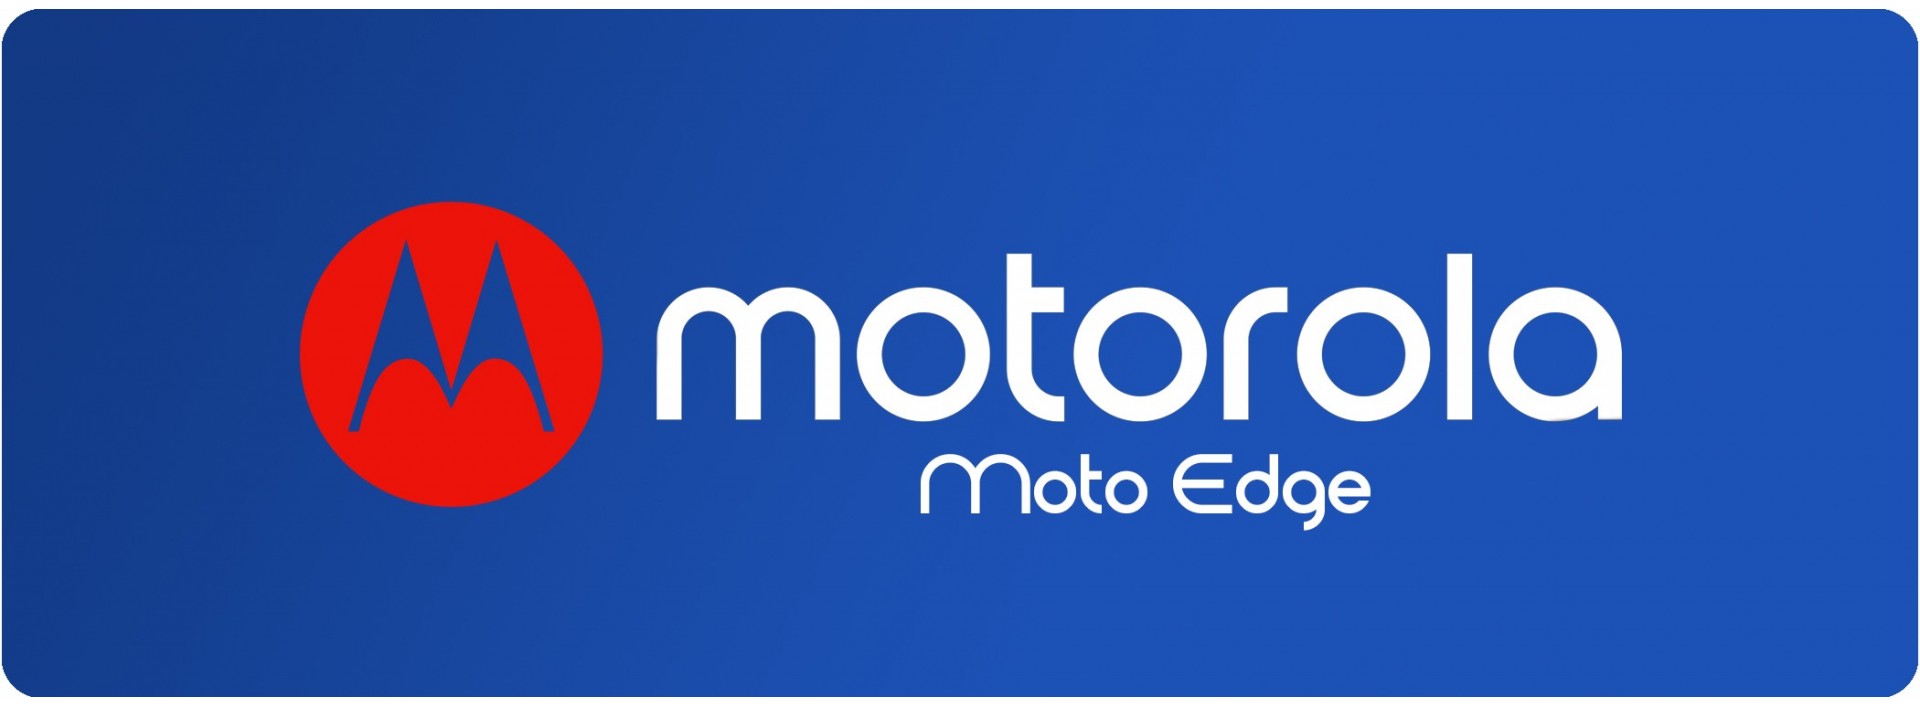 Motorola Familia Edge Fundas PERSONALIZADAS, el mejor precio y calidad